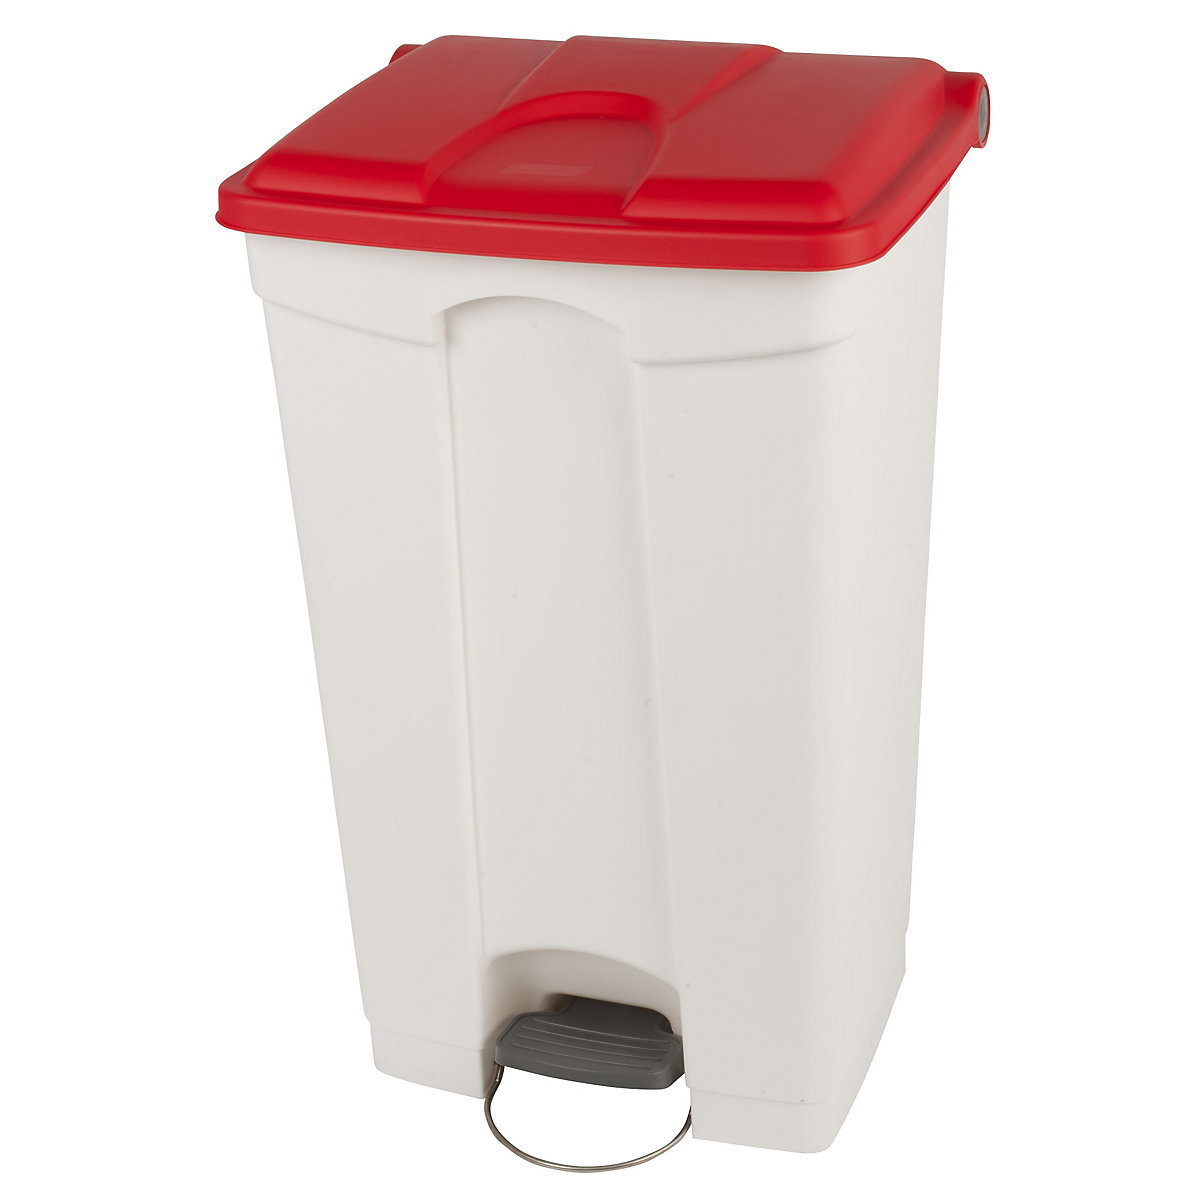 EUROKRAFTbasic – Nádoba na odpad s pedálem, objem 90 l, š x v x h 505 x 790 x 410 mm, bílá, červené víko